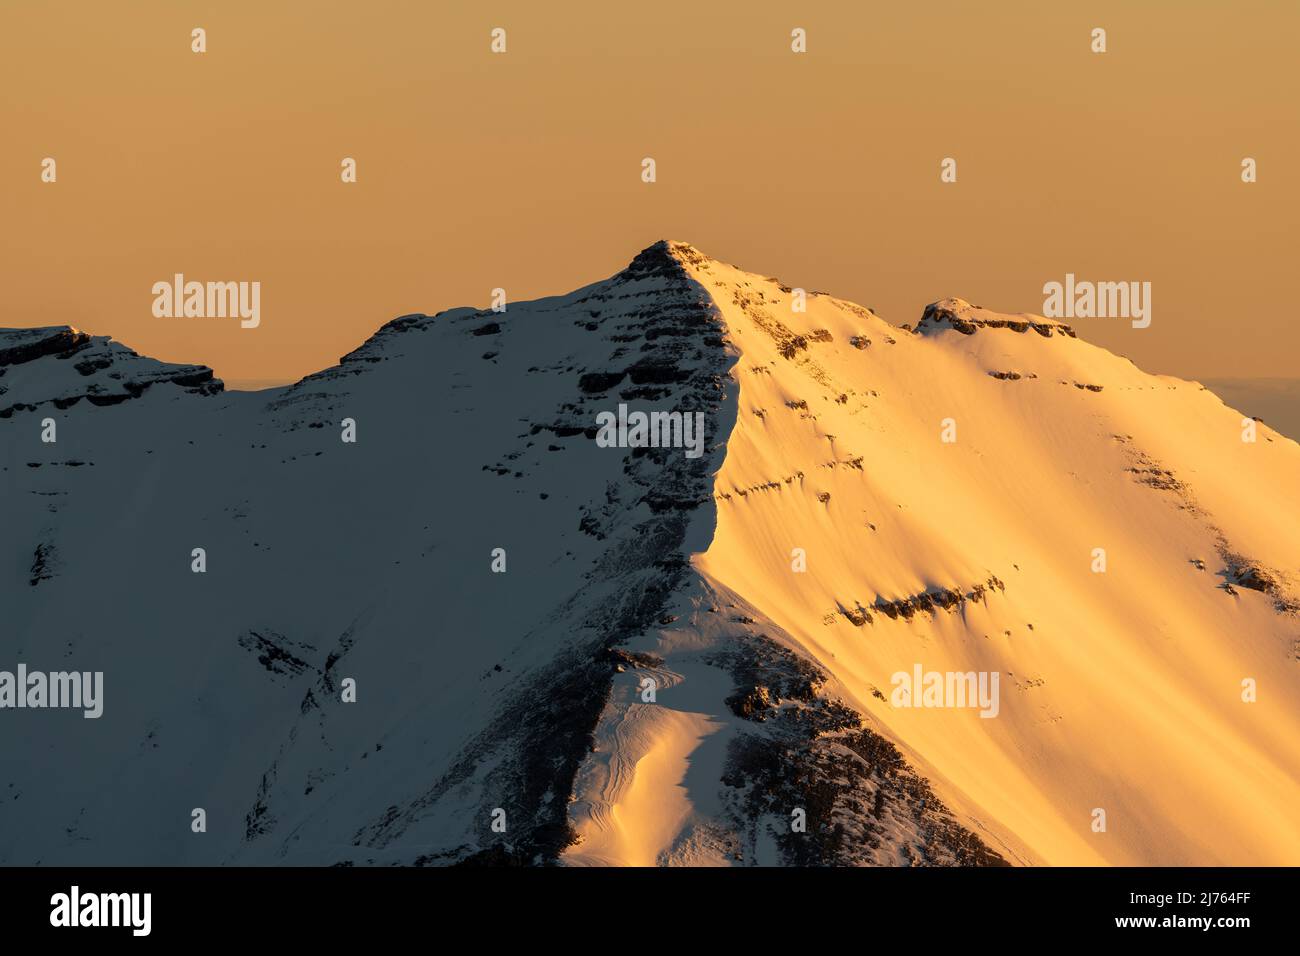 Die Soiernspitze erstrahlt bei Sonnenaufgang in goldenem, orangenen Licht. Aufgenommen im Winter mit Schnee und Eis von der westlichen Karwendelspitze oberhalb von Mittenwald. Stockfoto